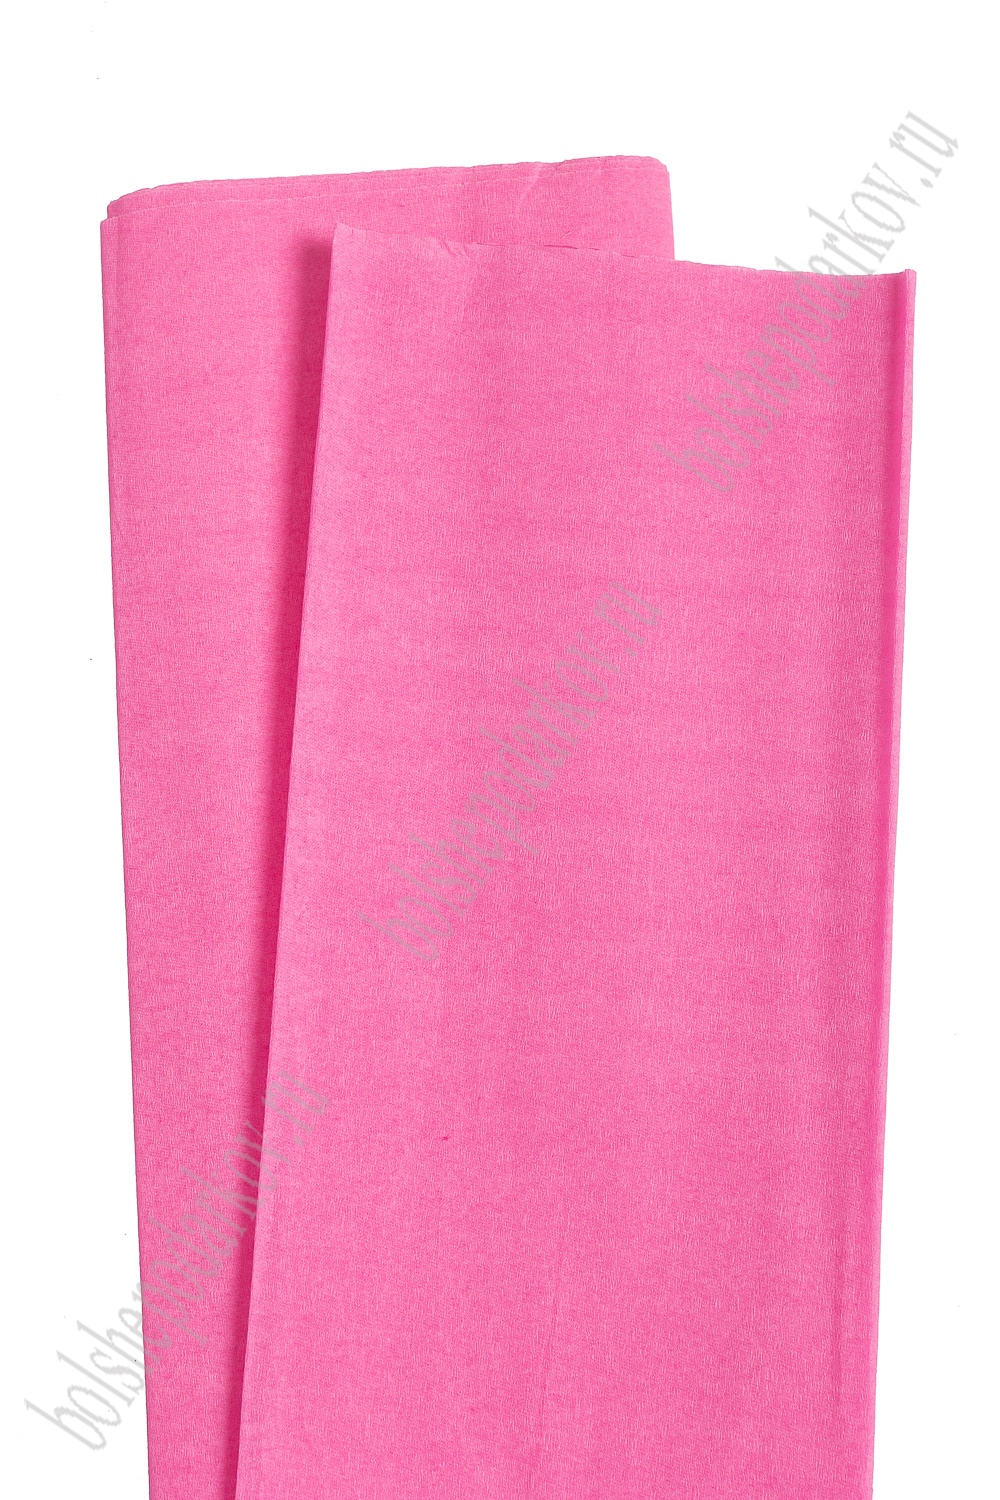 Крепированная бумага 50 см*2 м (10 листов) SF-2167, розовый №310 УЦЕНКА